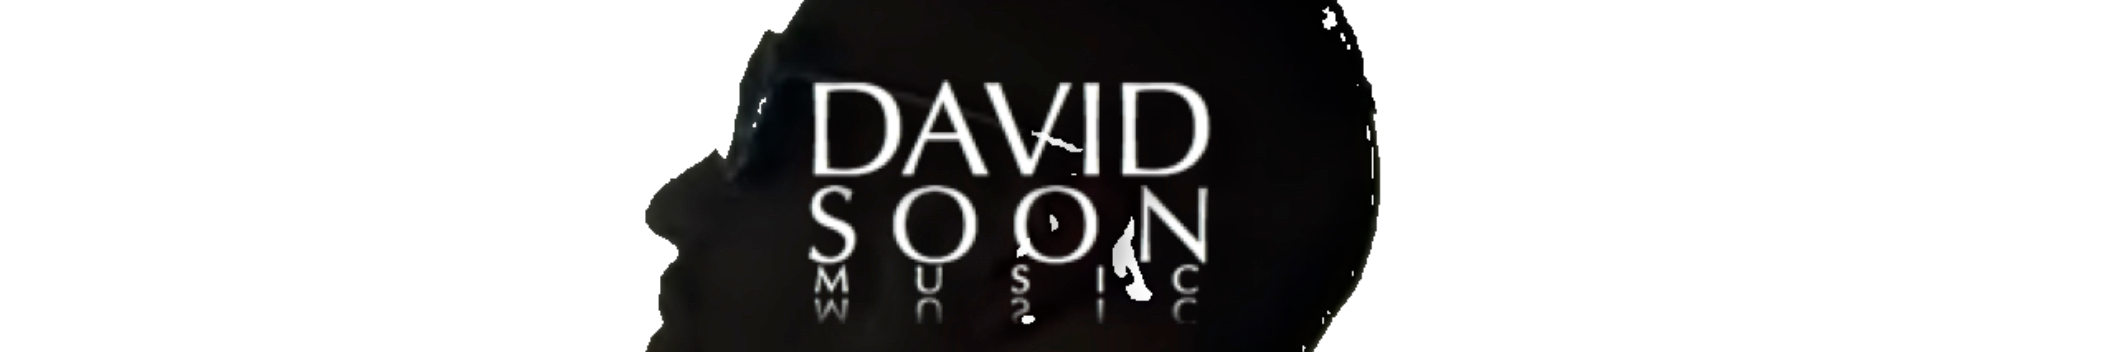 DAVID SOON